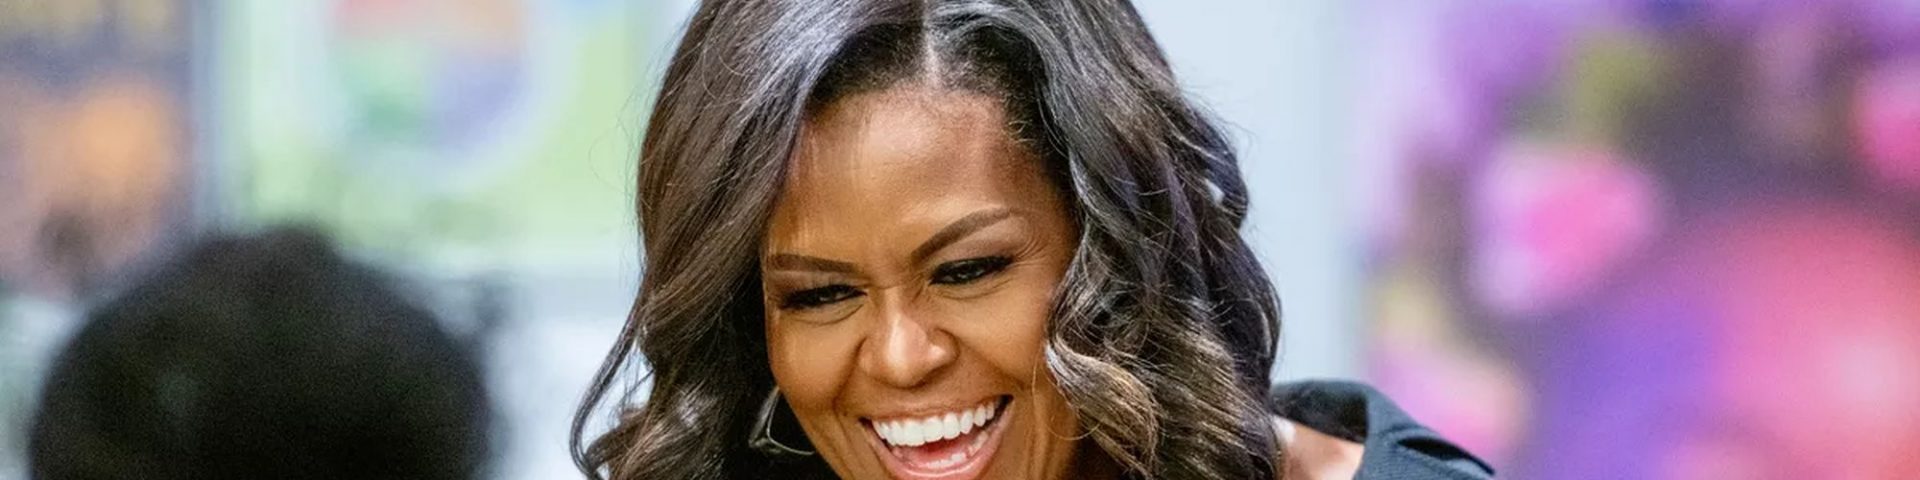 Michelle Obama al Festival di Sanremo 2019?